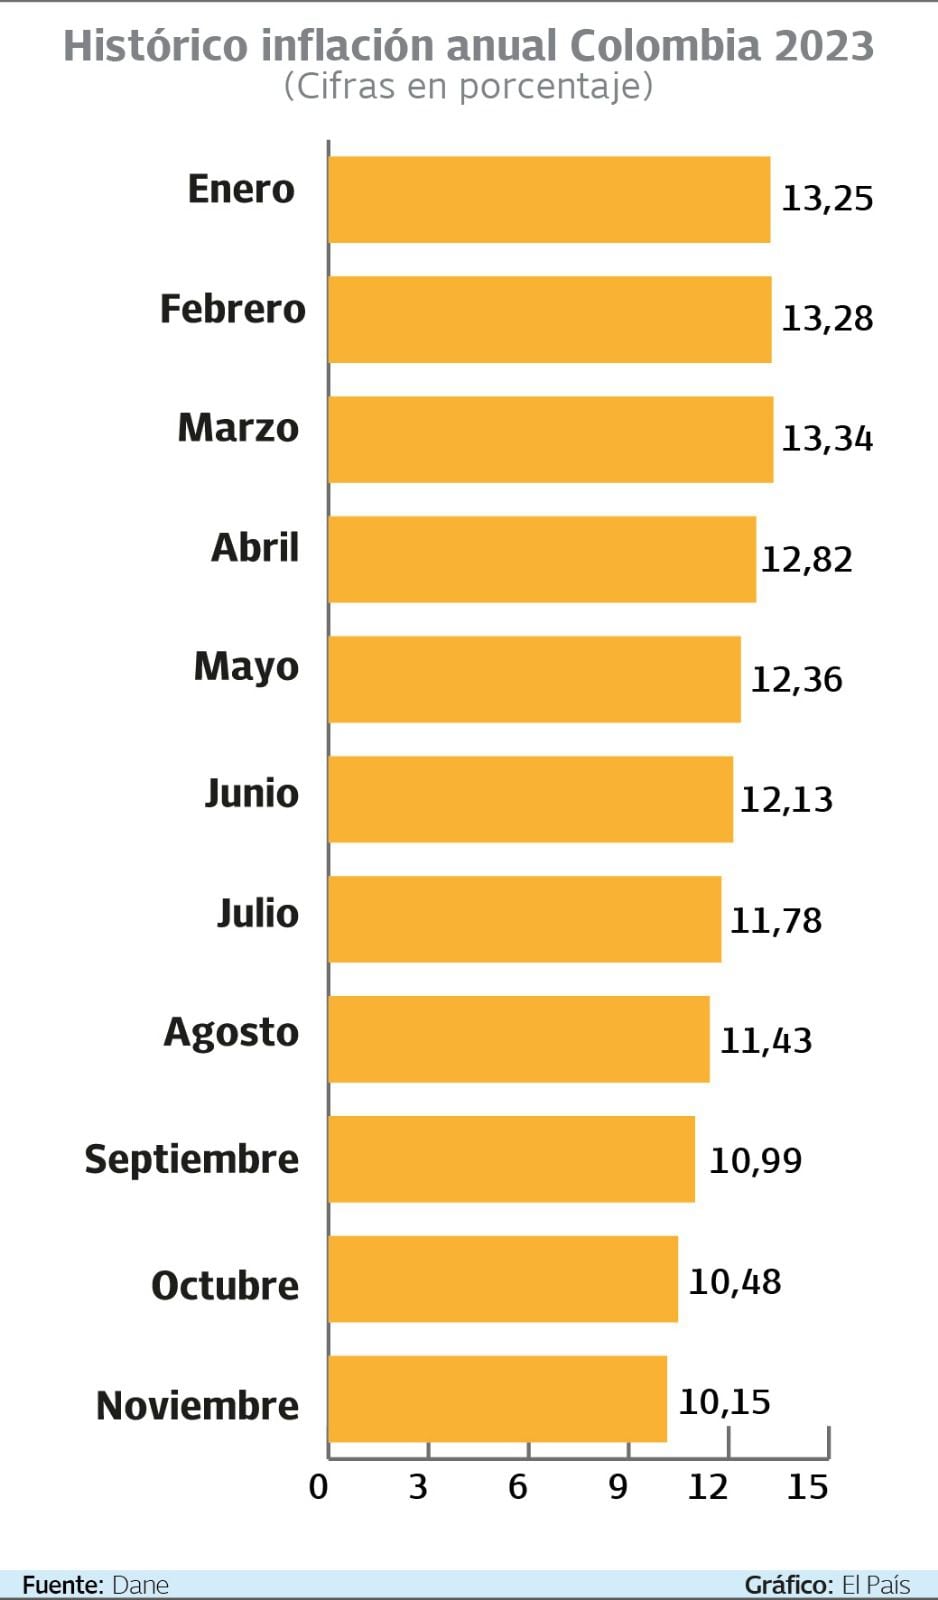 Histórico inflación anual Colombia 2023

Gráfico: El País  Fuente: Dane